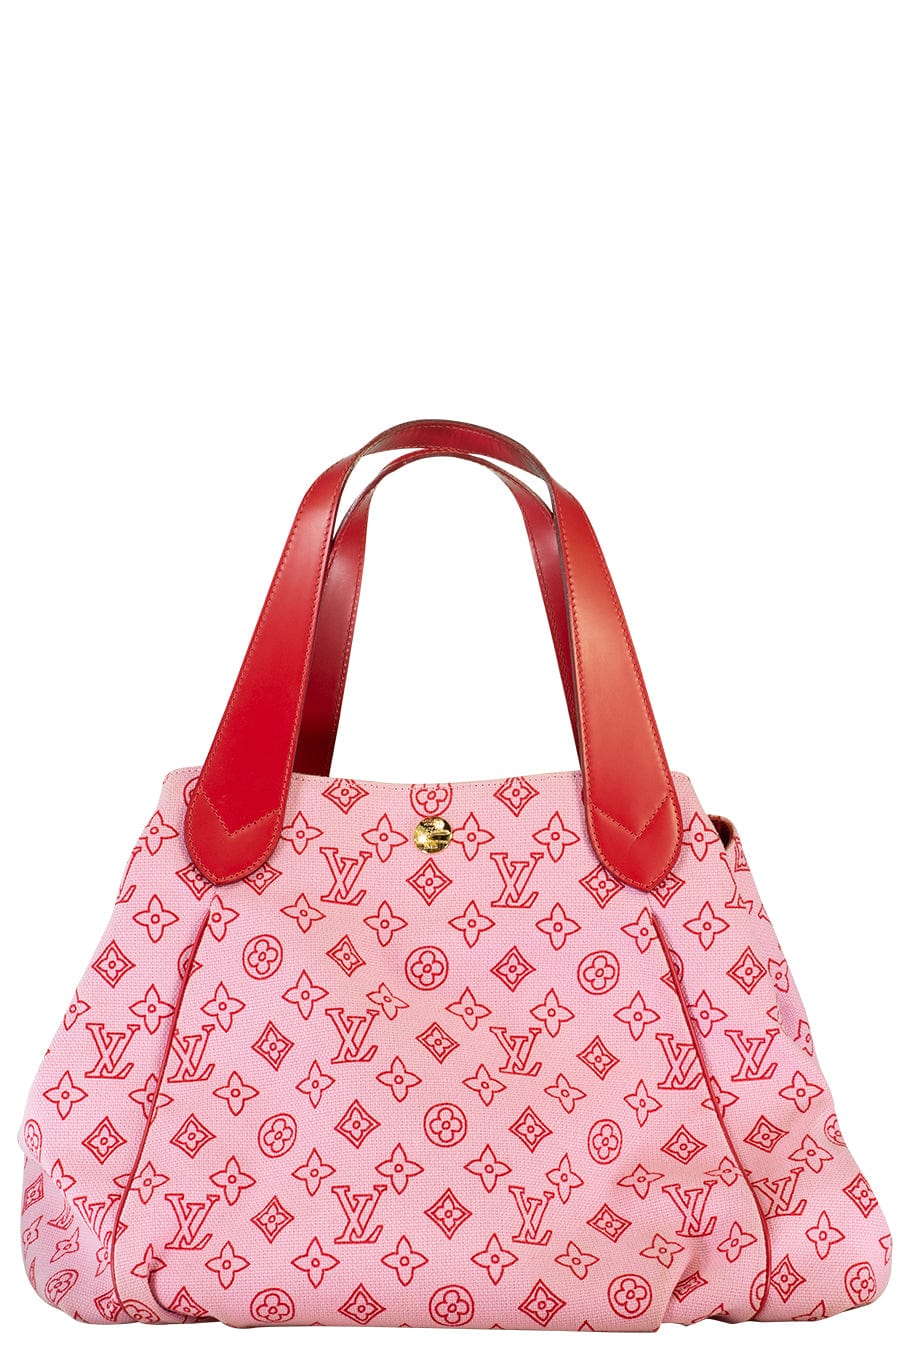 Louis Vuitton, Bags, Louis Vuitton Cabas Ipanema Pm Rose Red Bag Beach